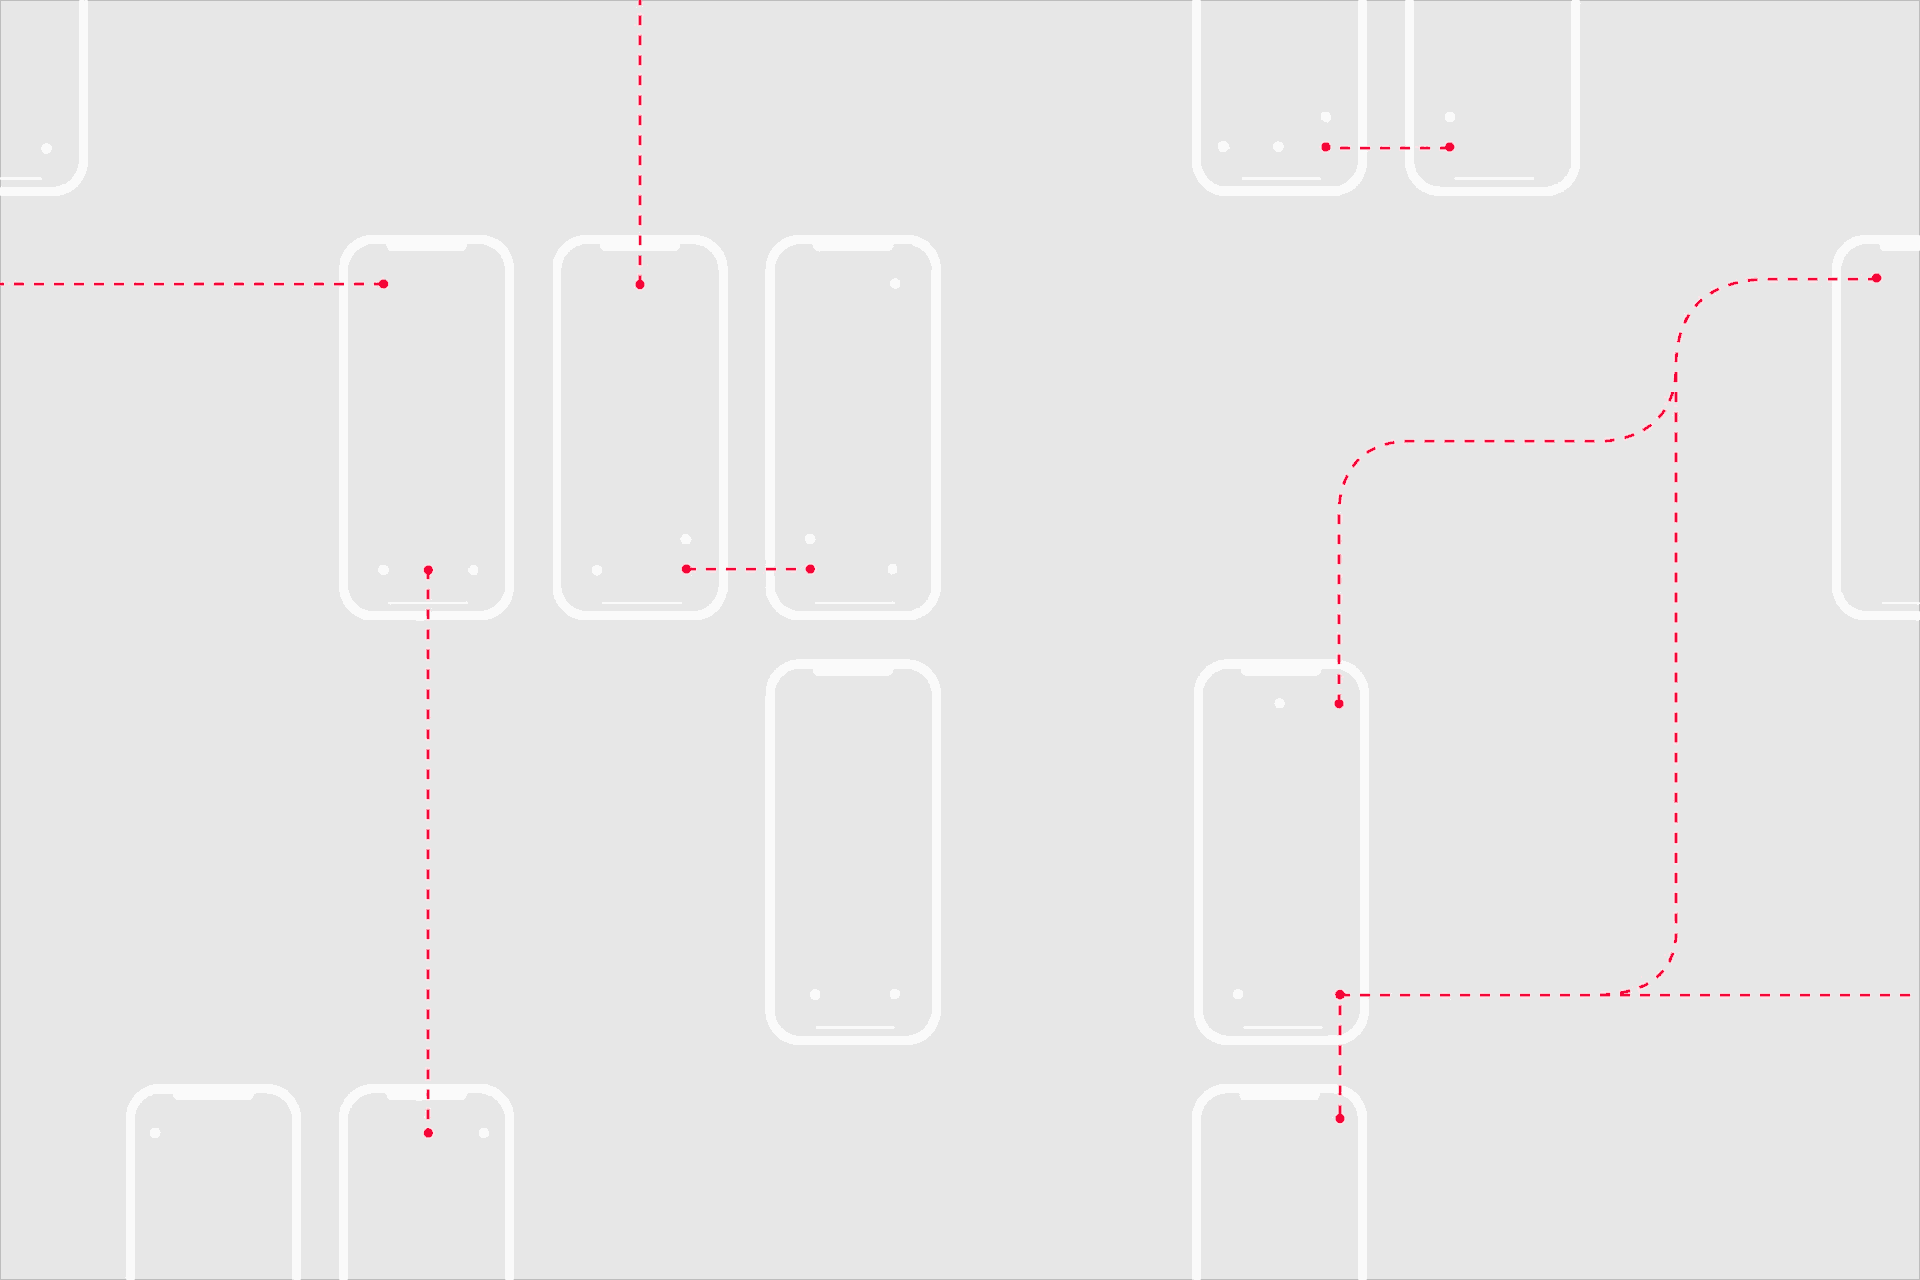 Auf der Illustration sind rechteckige Formen zu sehen, die Relais oder Mobiltelefone symbolisieren können. Diese vernetzen sich in regelmäßigen Abständen, indem sie durch Linien verbunden werden.